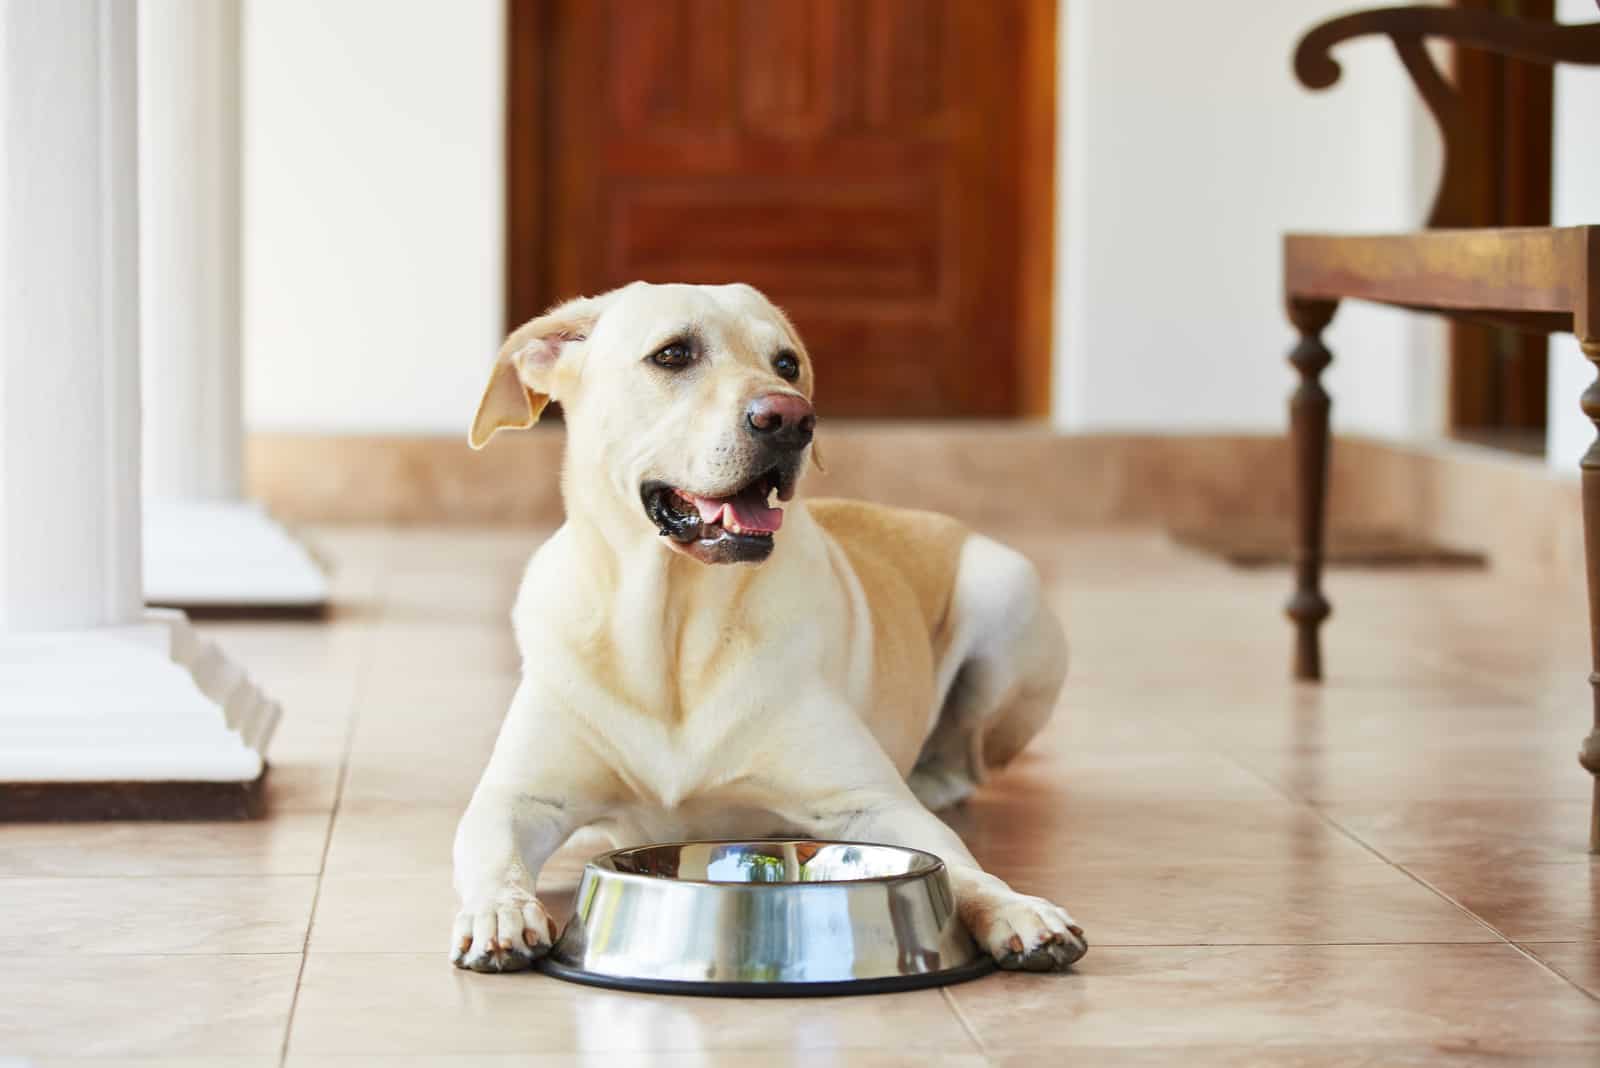 Hungriger Labrador mit leerer Schüssel wartet auf Essen